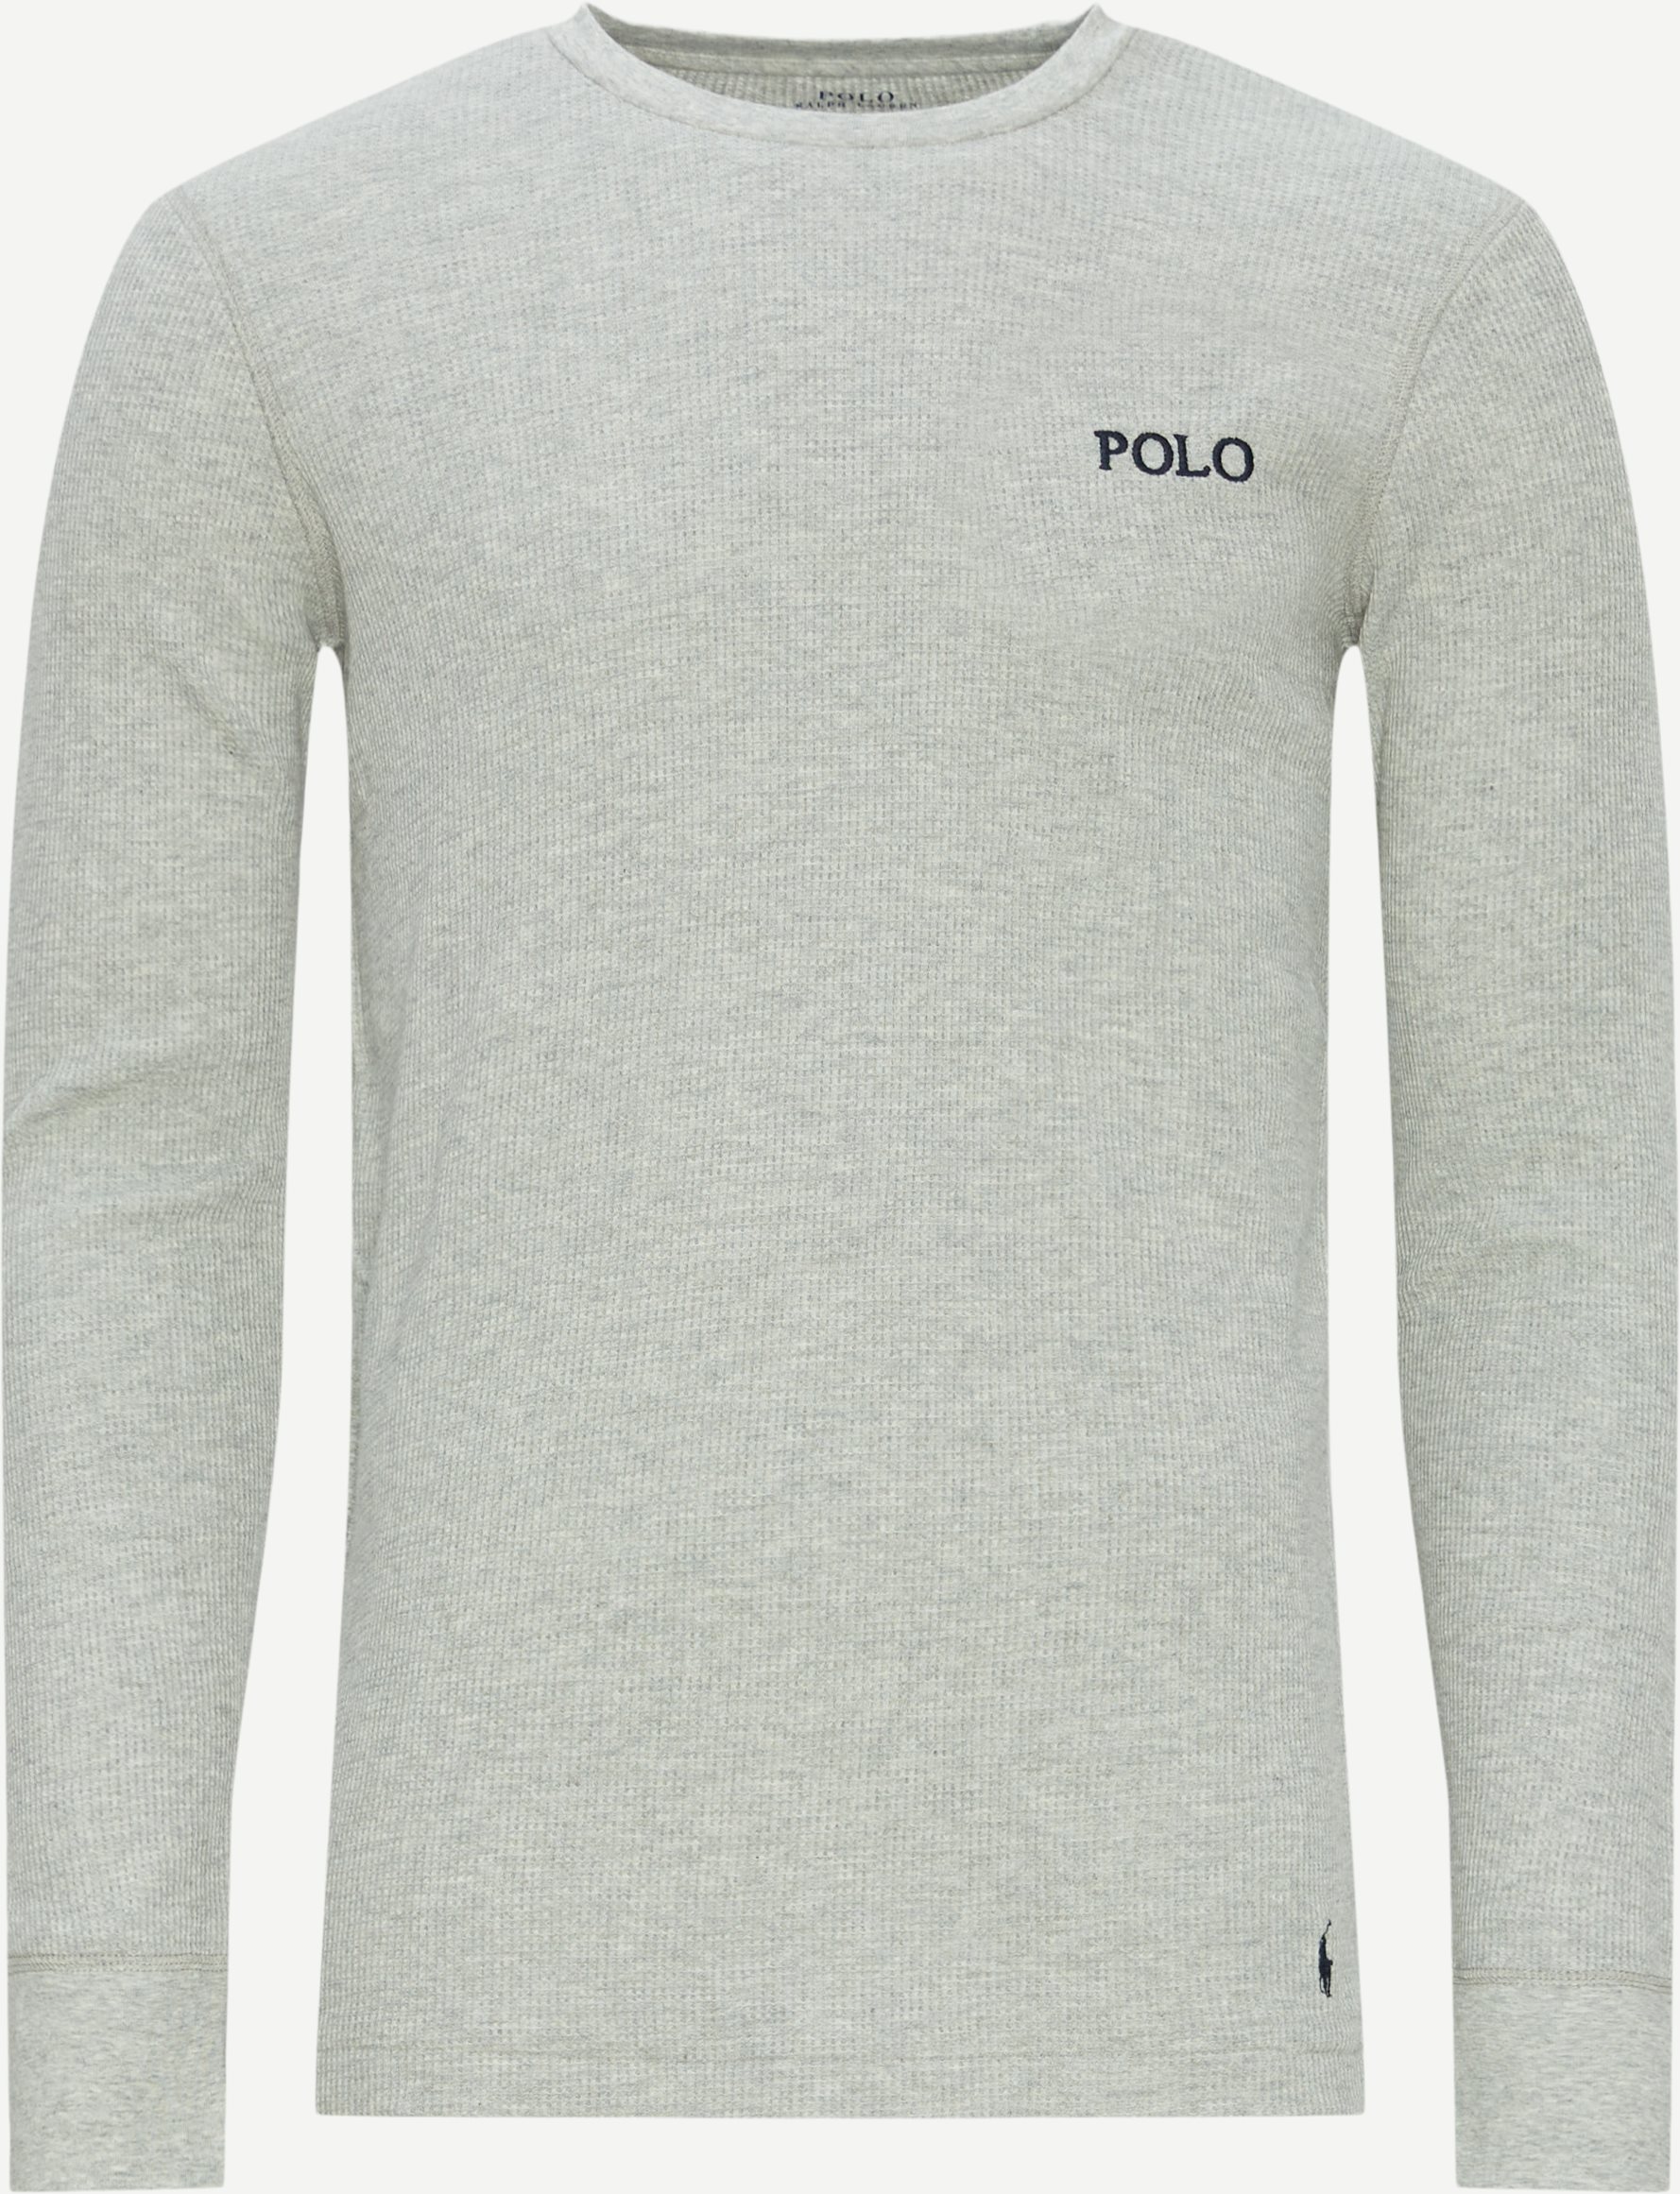 Polo Ralph Lauren T-shirts 714899615 LS CREW SLEEP TOP Grey